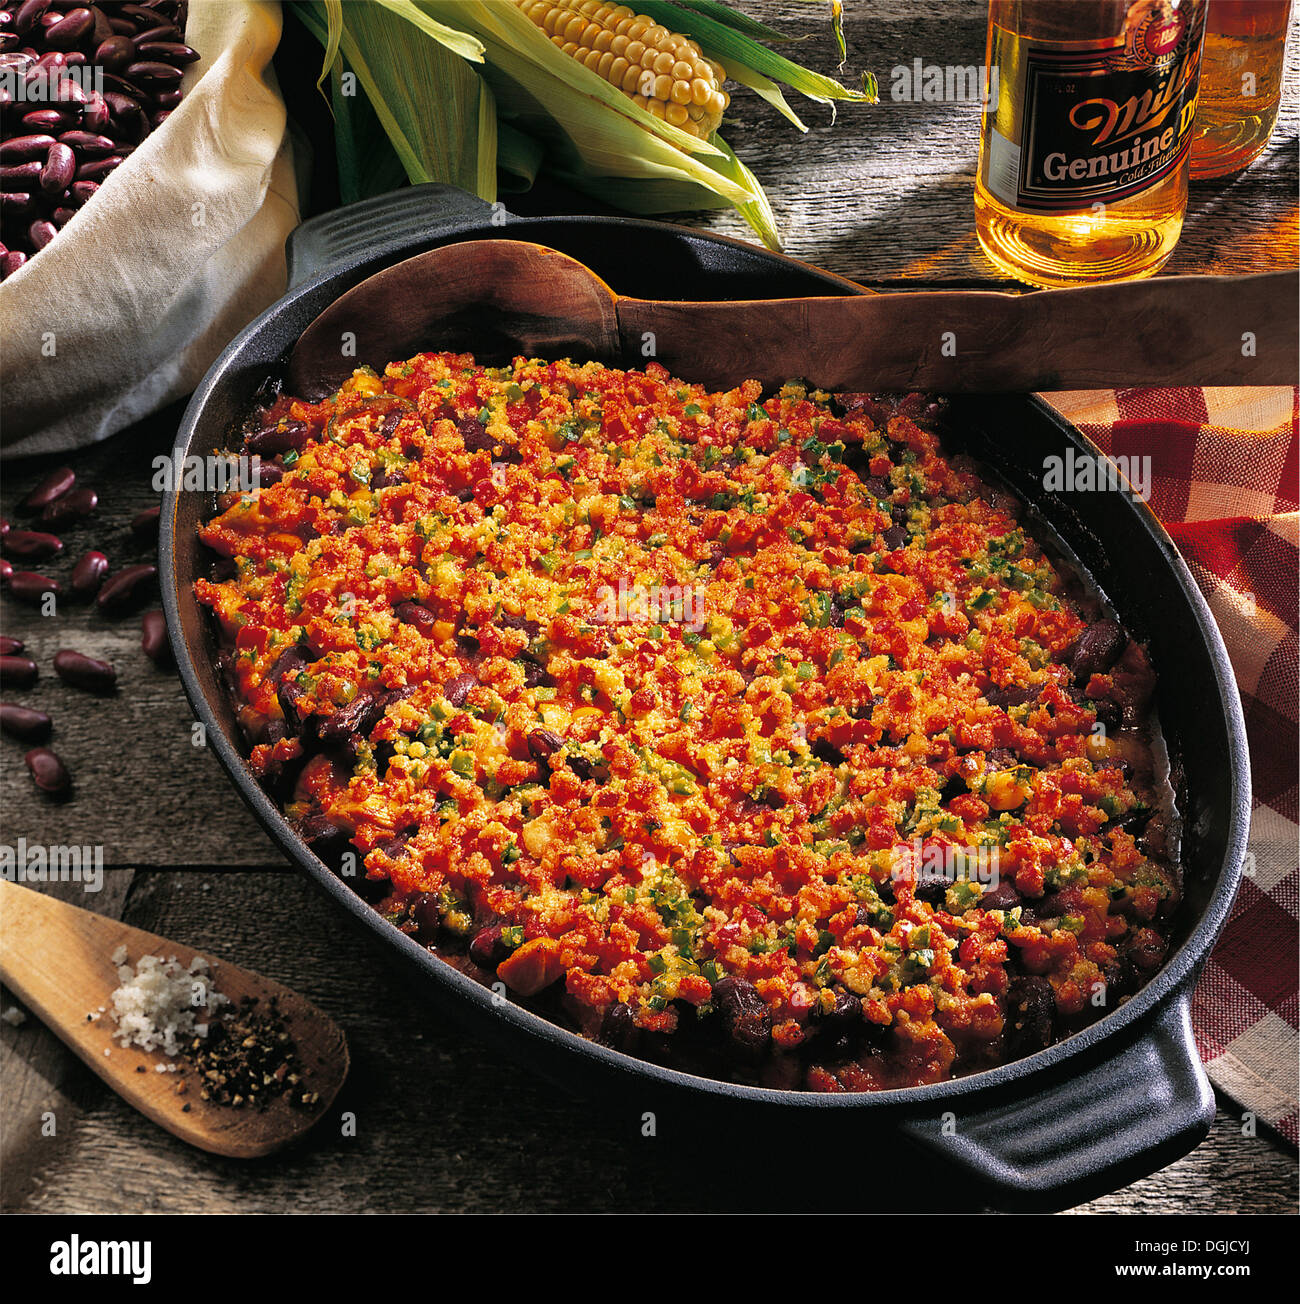 Texan chili bake, USA. Stock Photo